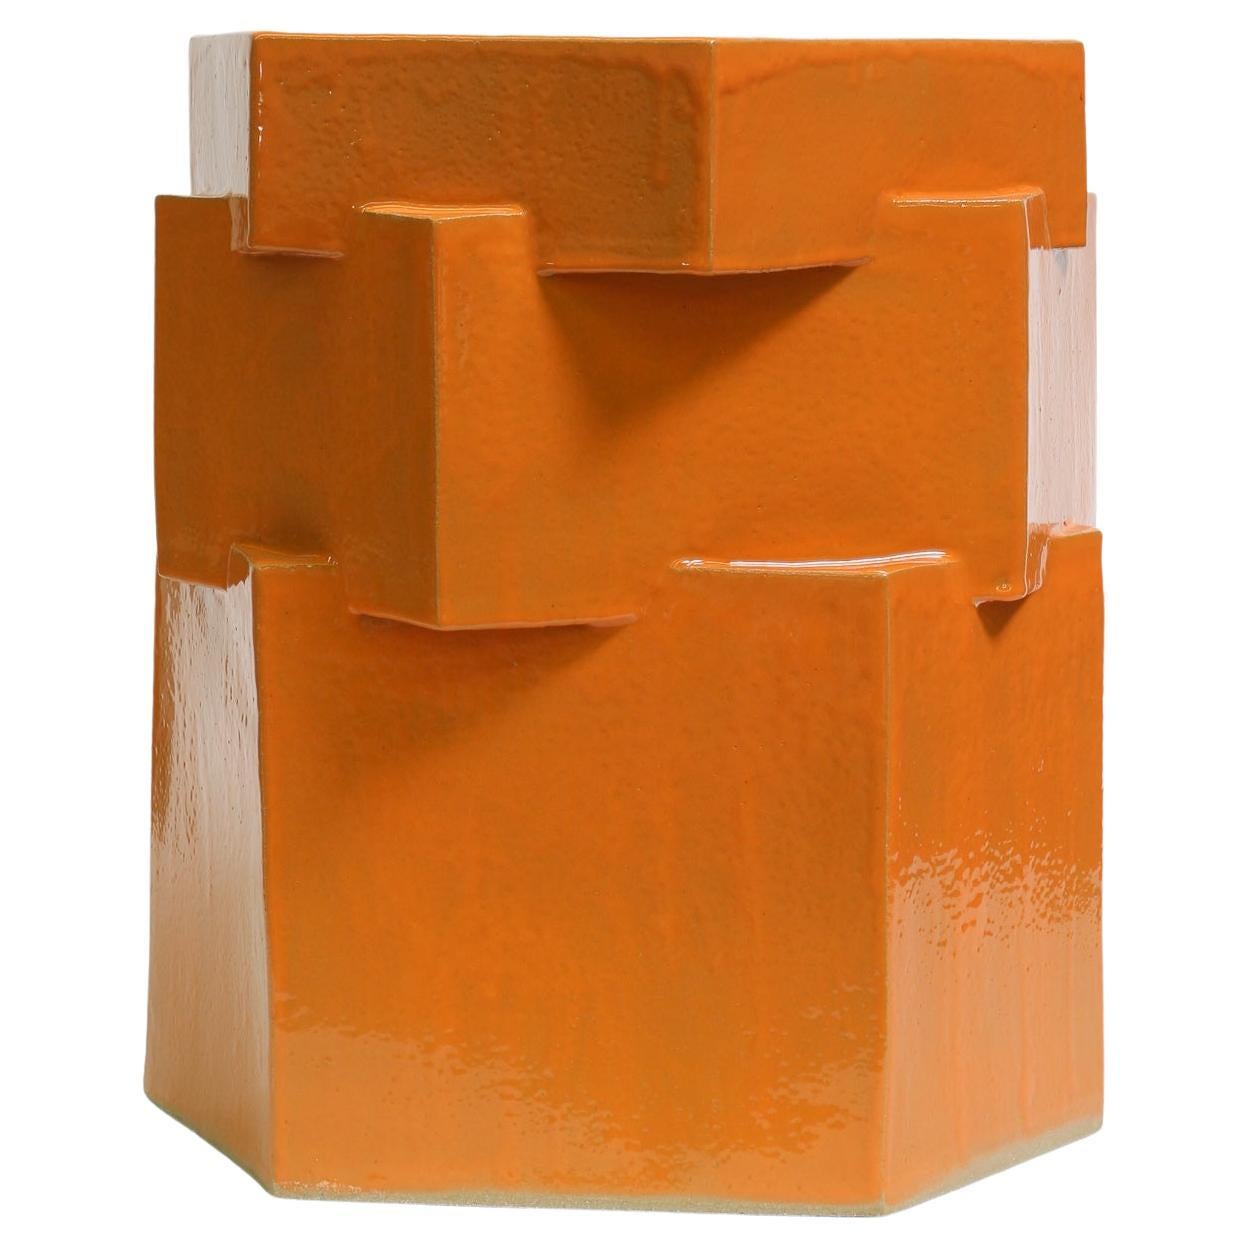 Dreistöckiges Keramik-Hex-Pflanzgefäß in glänzendem Orange von Bzippy